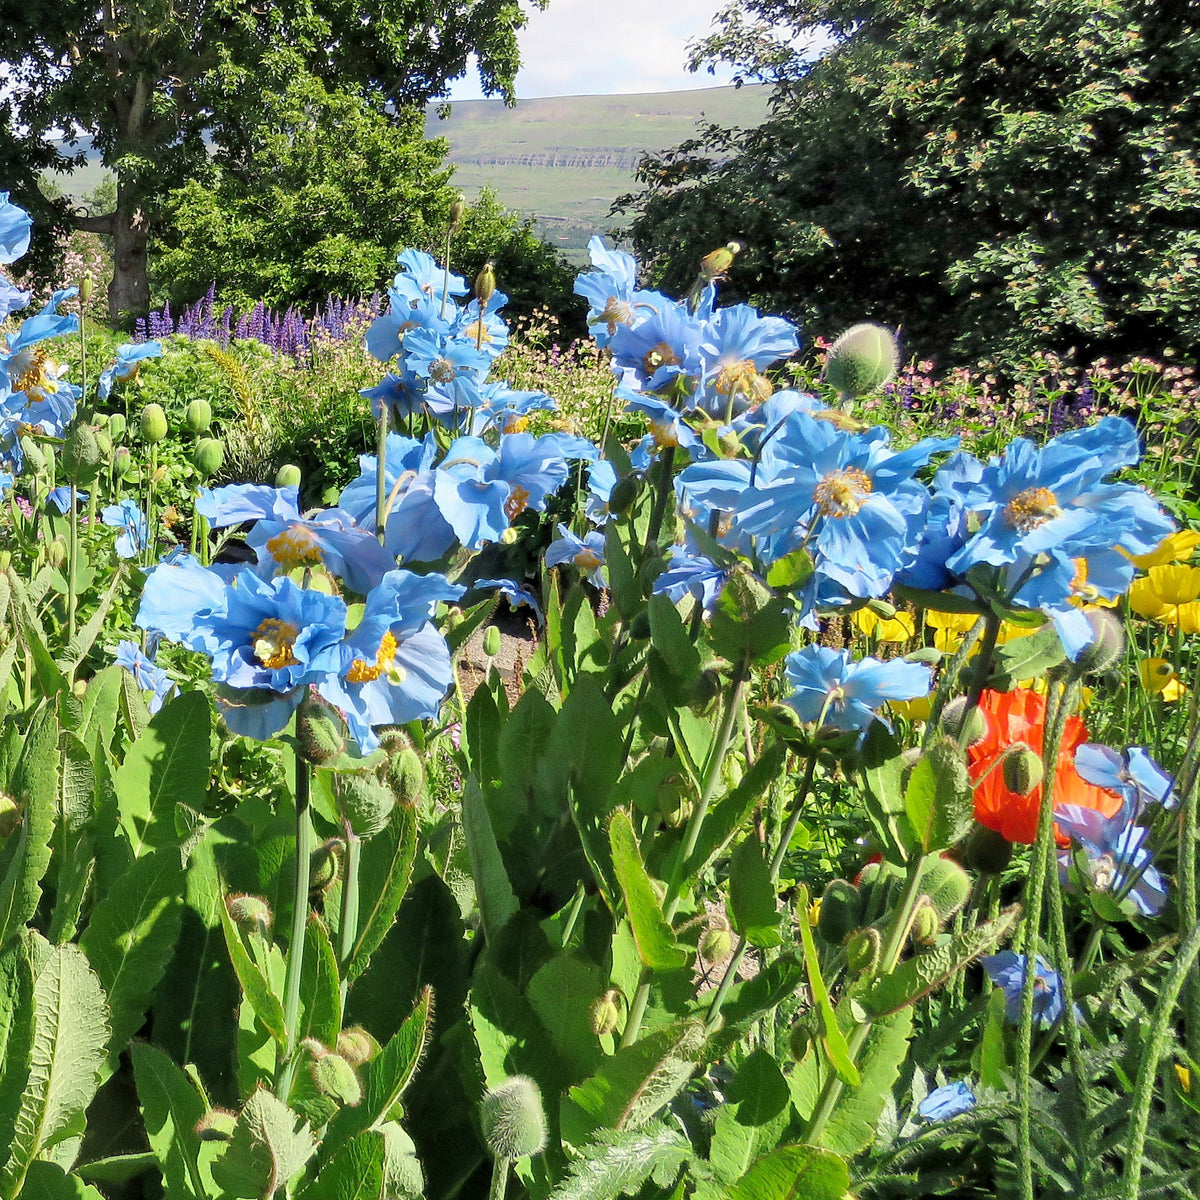 Verveine tapissante bleue - Le pot de 9 x 9 cm : Plantes et fleurs  méditerranéennes Botanic® balcon terrasse - botanic®